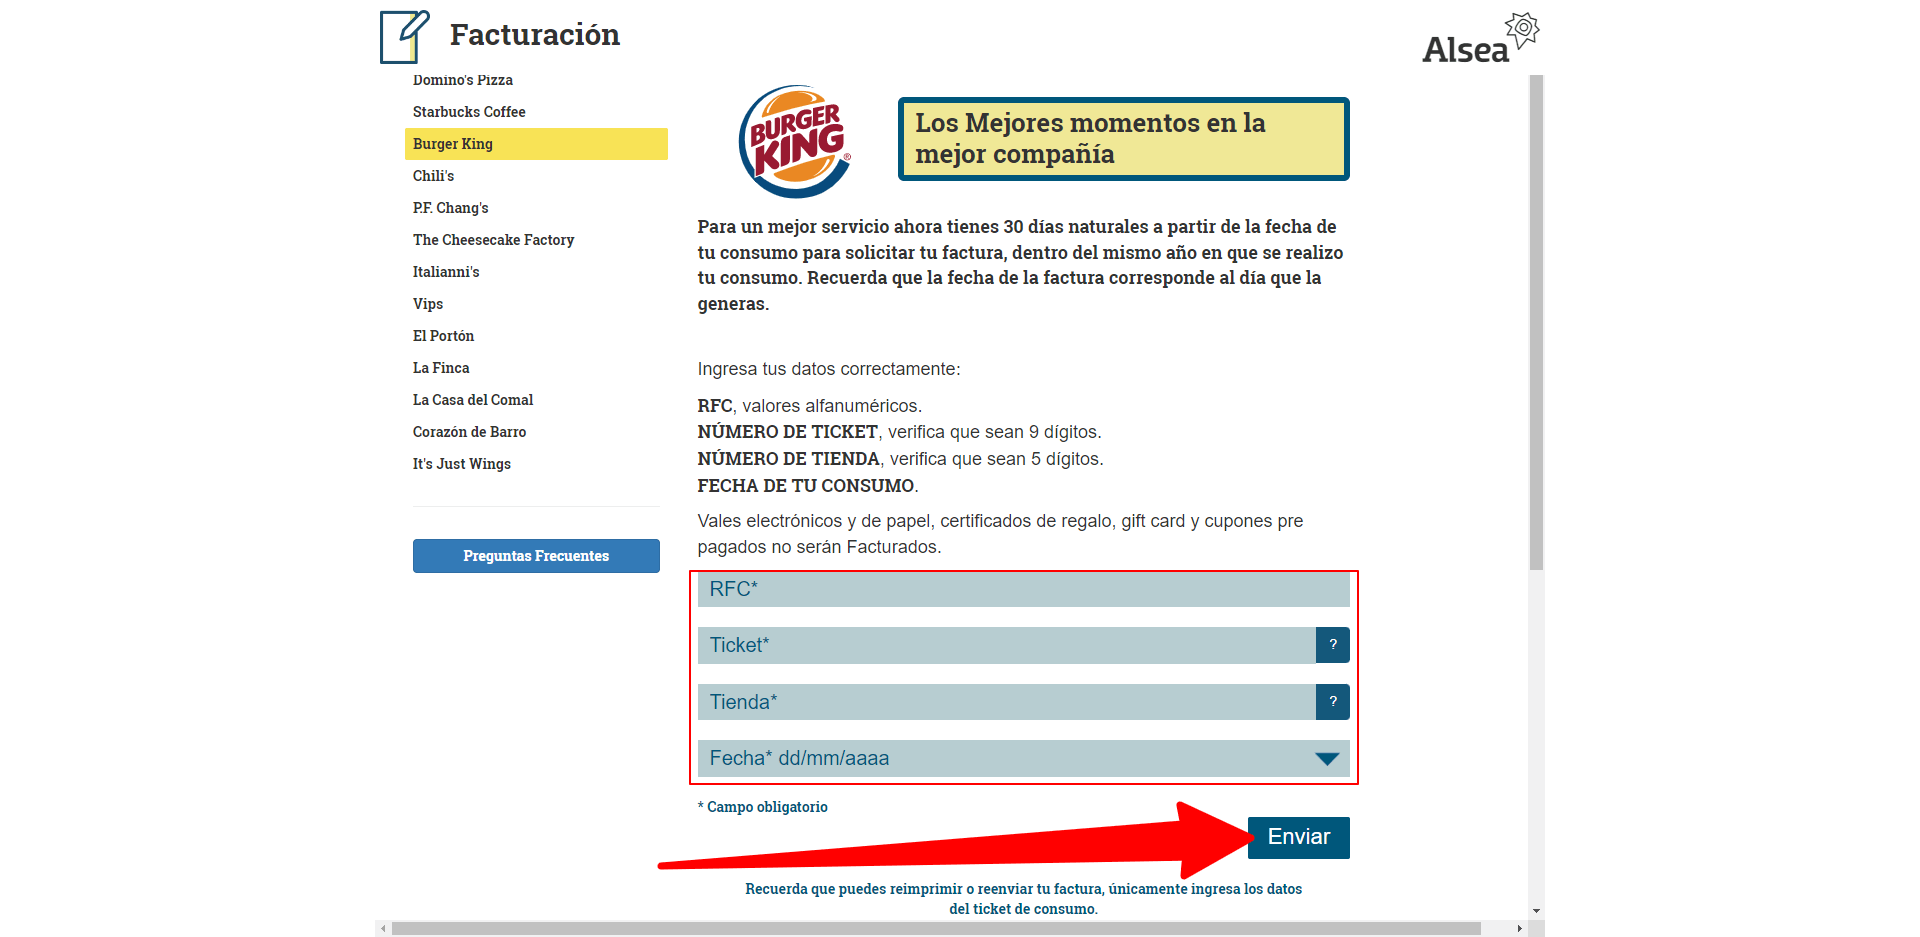 ingresar rfc y ticket Burger King alsea facturacion Facturacion ADN Fiscal